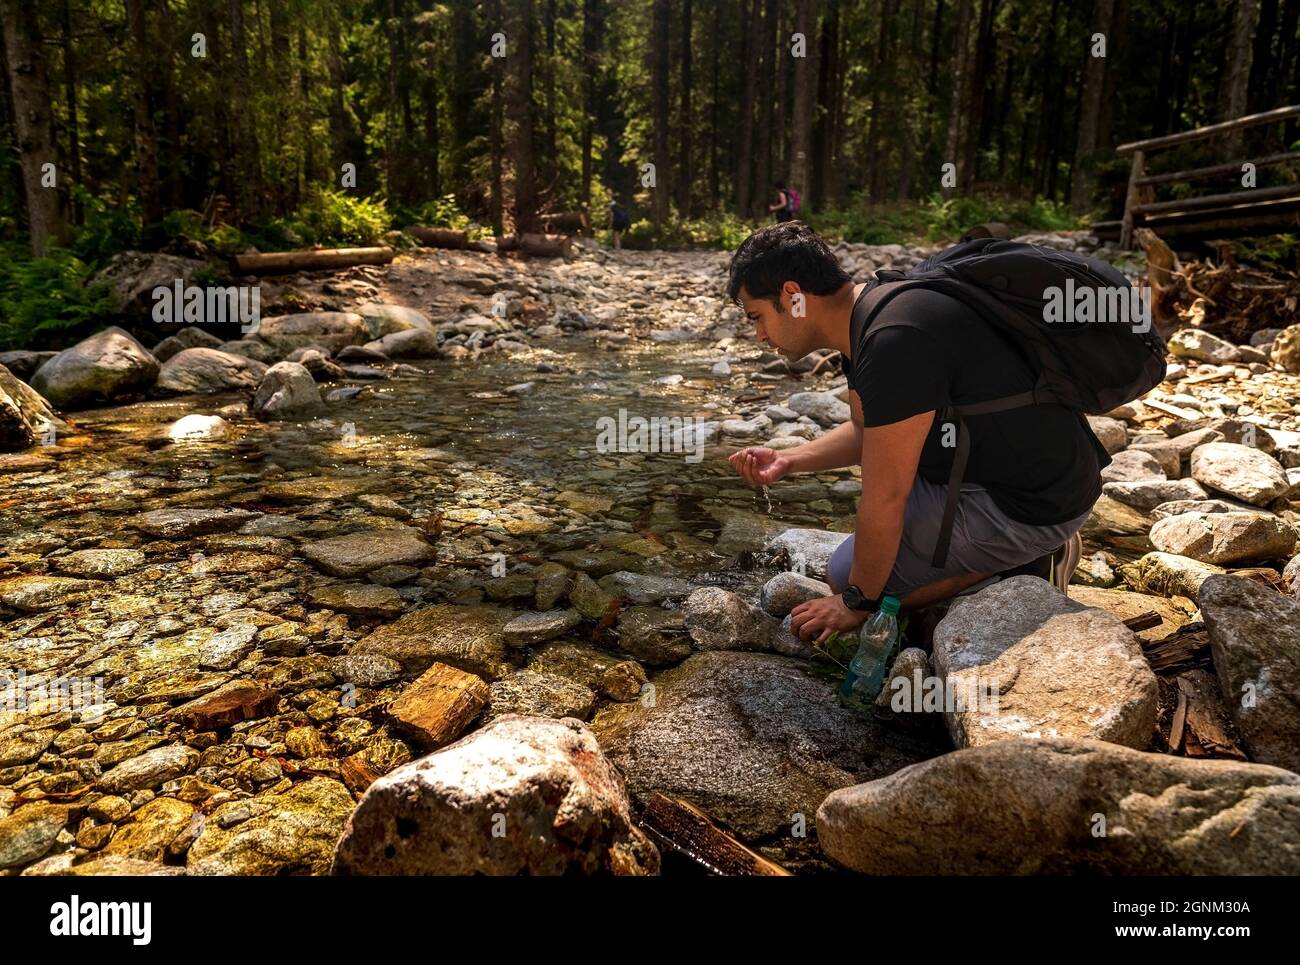 Uomo arabo indiano marrone con zaino seduto accanto al flusso d'acqua pulita o acqua potabile del fiume da esso, facendo una pausa durante il trekking o un'escursione nella foresta Foto Stock